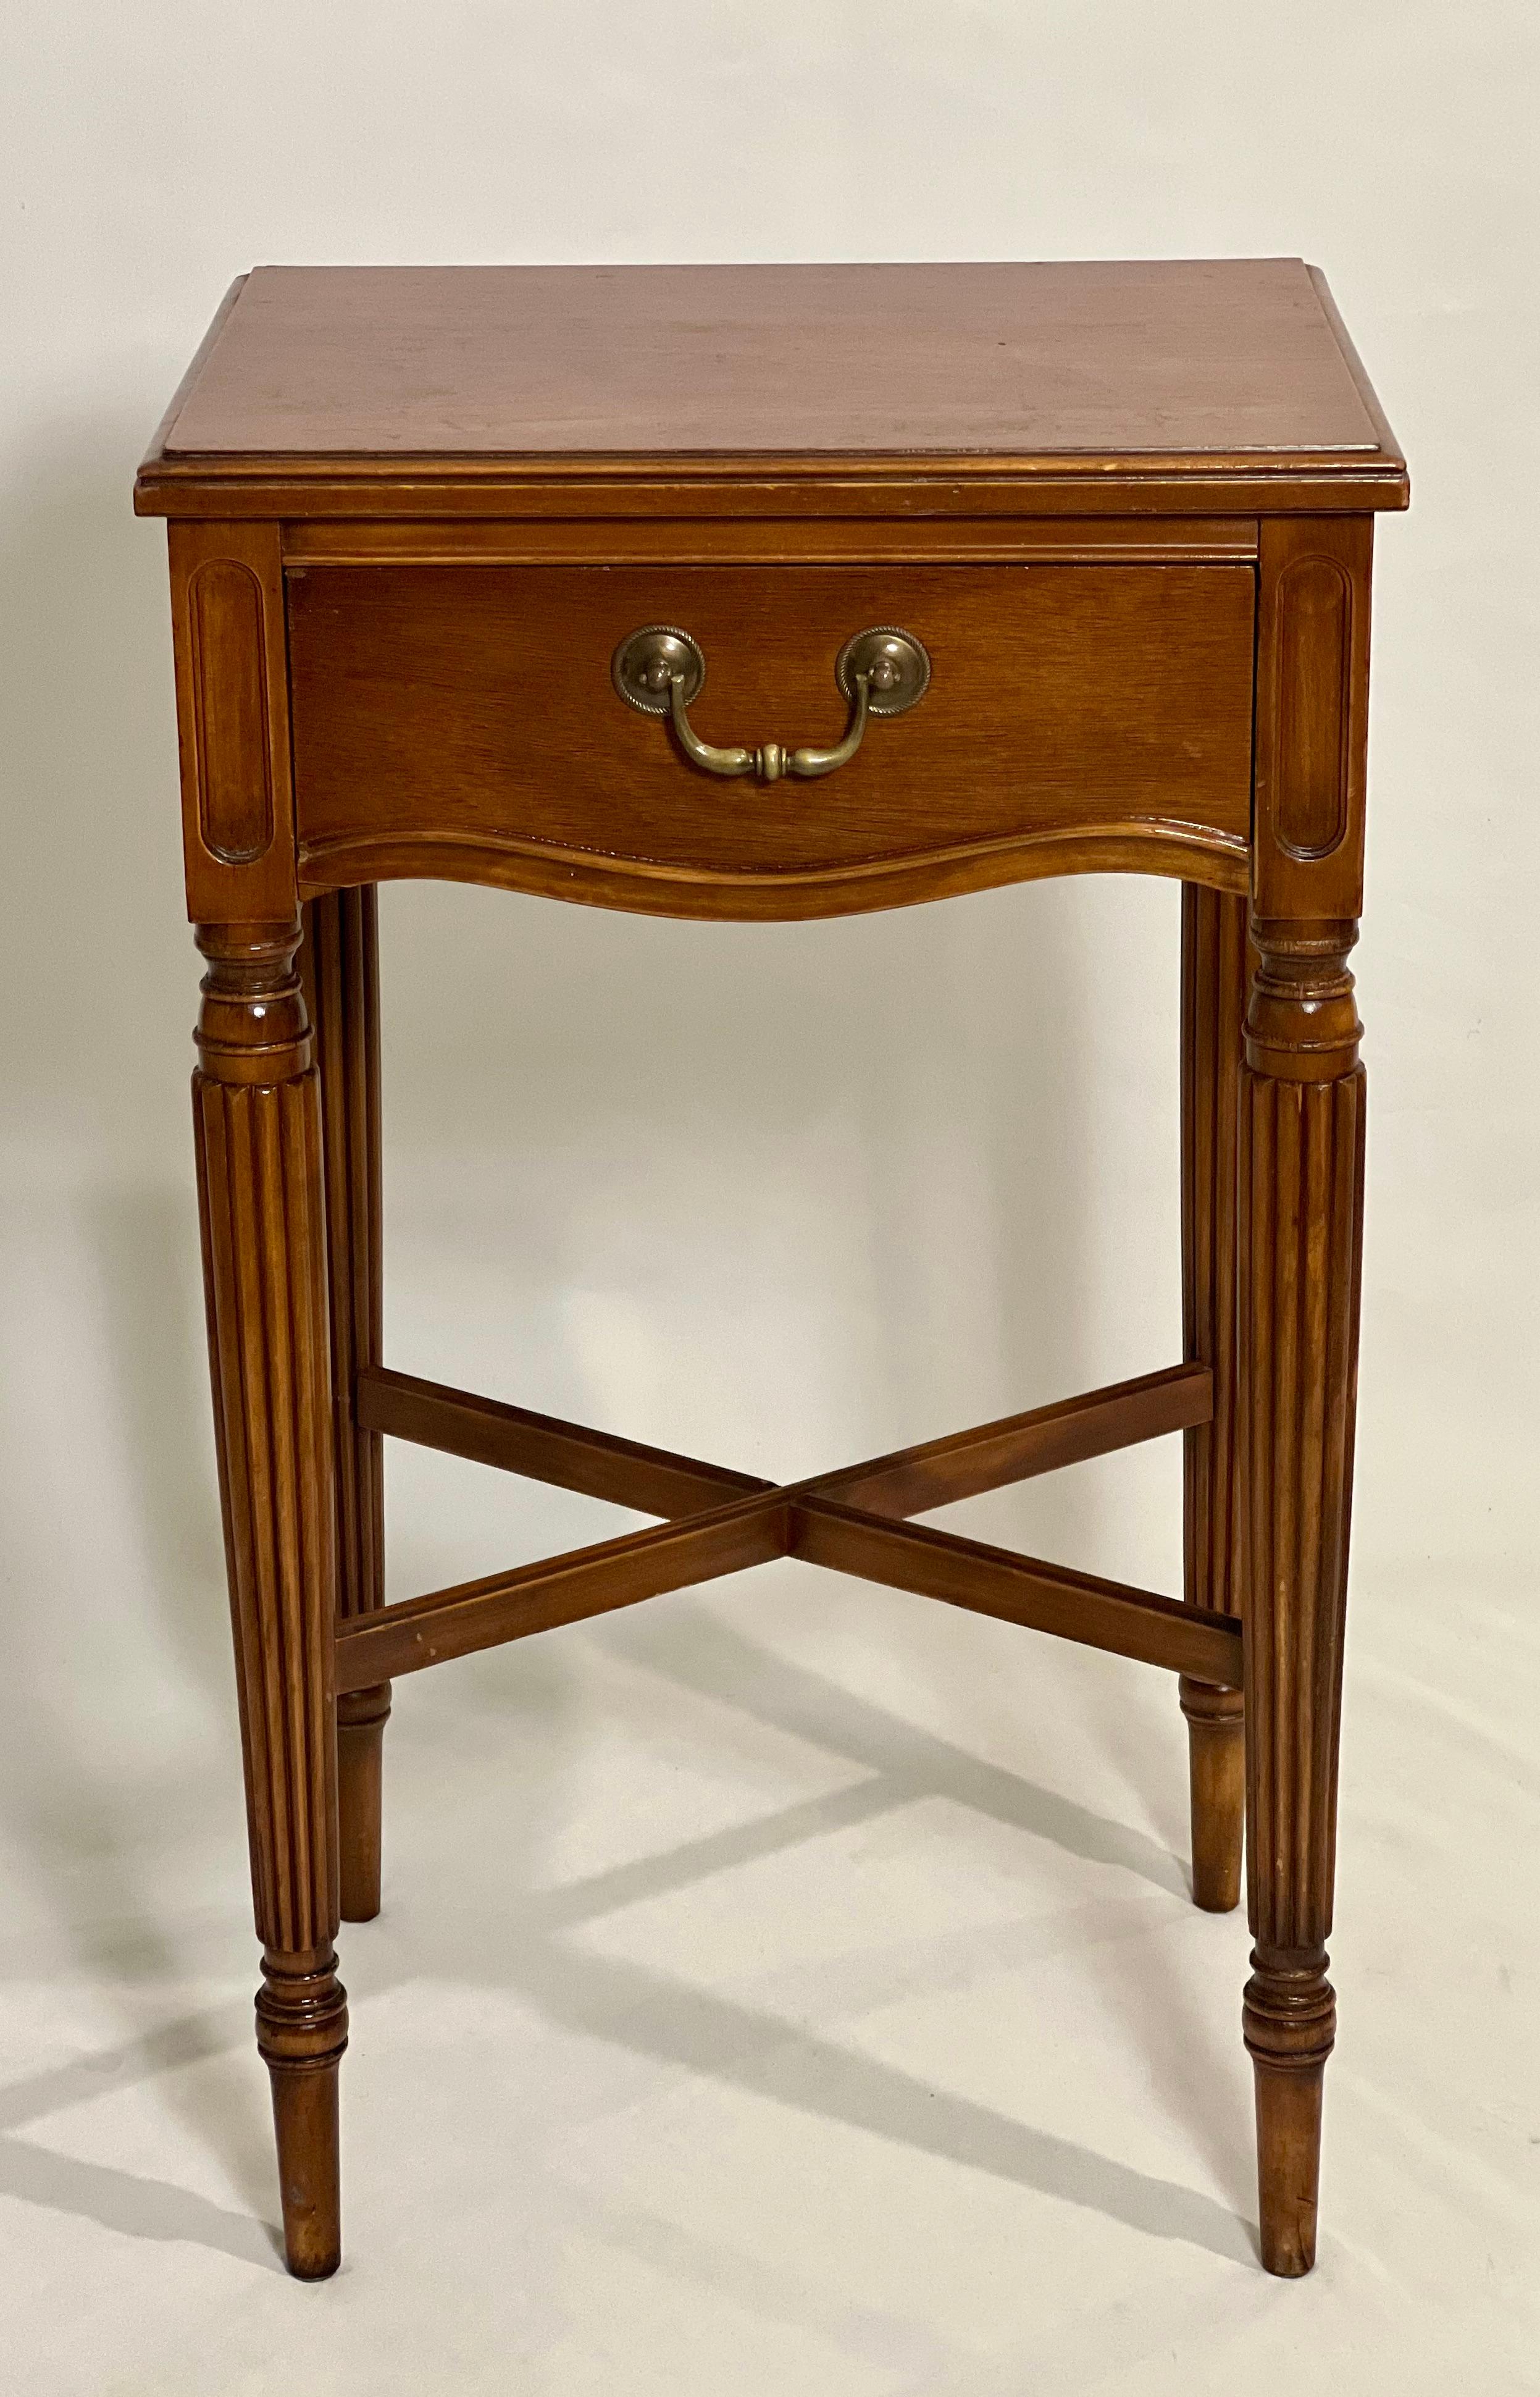 Table d'appoint ou support en noyer de style Louis XVI par Berkey et Gay, C.C. 1920.

Table majestueuse avec un seul tiroir à queue d'aronde avec tirette en laiton, des pieds cannelés, une traverse et un dos fini.  La table est magnifiquement